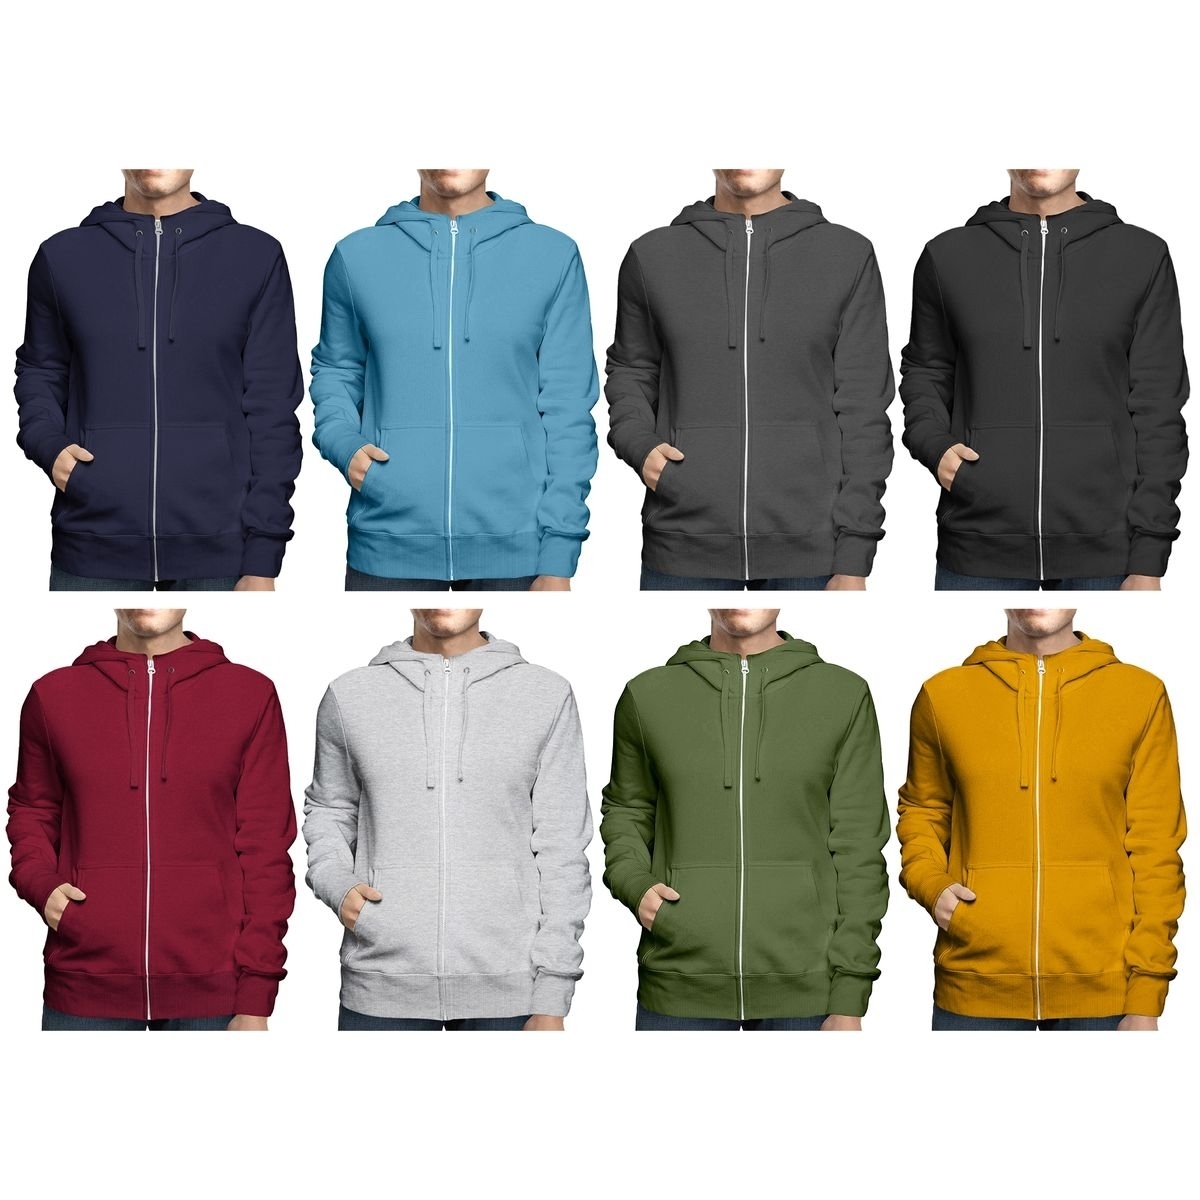 2-Pack: Men's Winter Warm Soft Cozy Full Zip-Up Fleece Lined Hoodie Sweatshirt - X-large